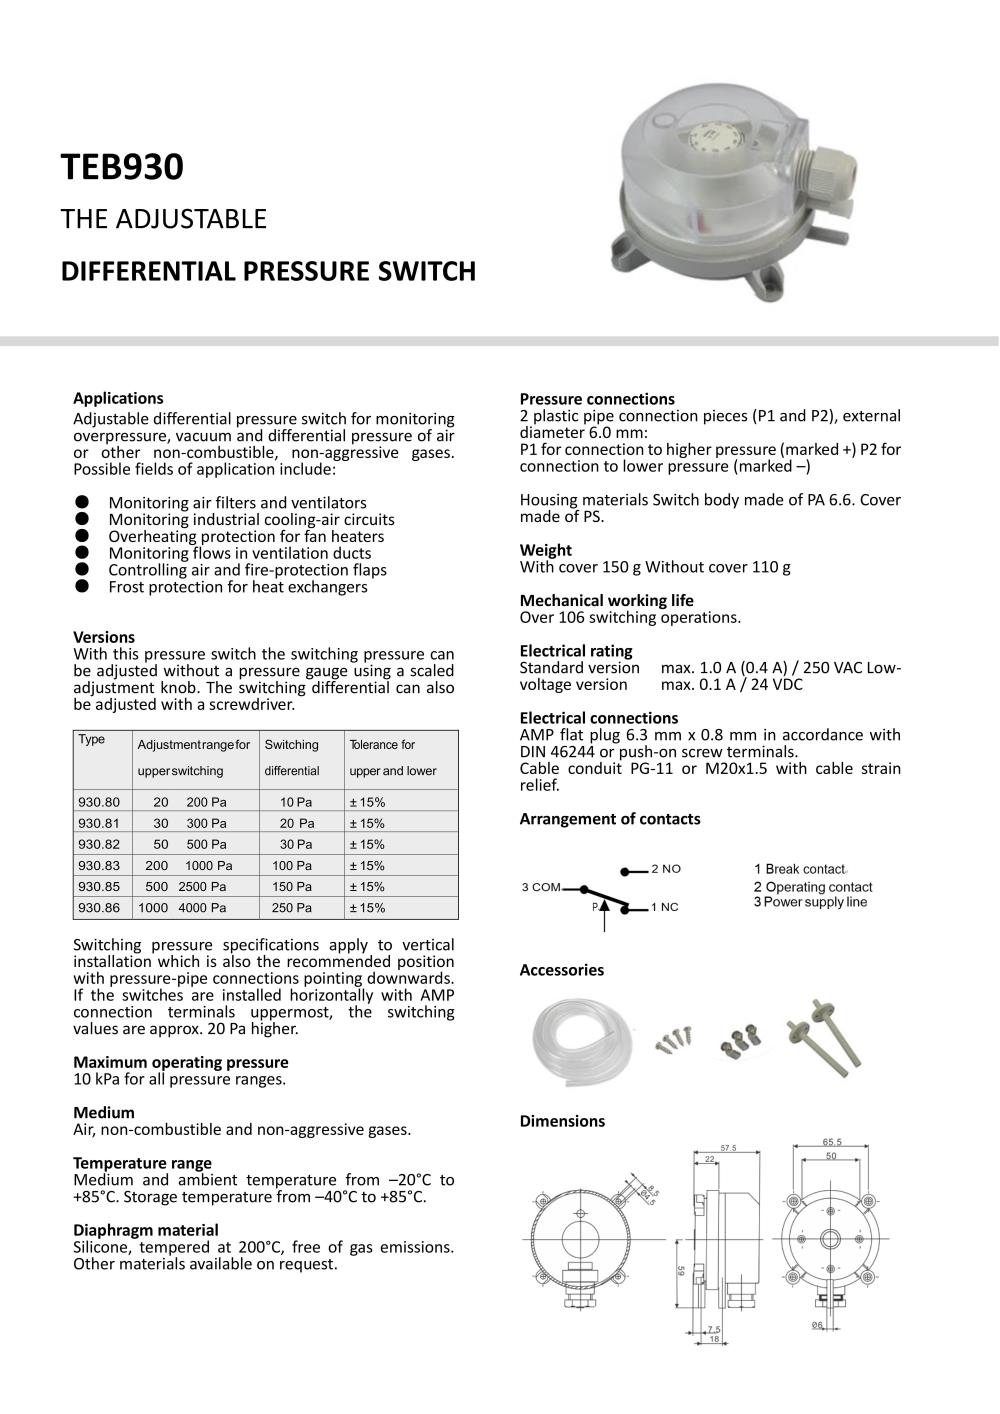 สวิทซ์แรงดันลม (Differential Pressure Switch)